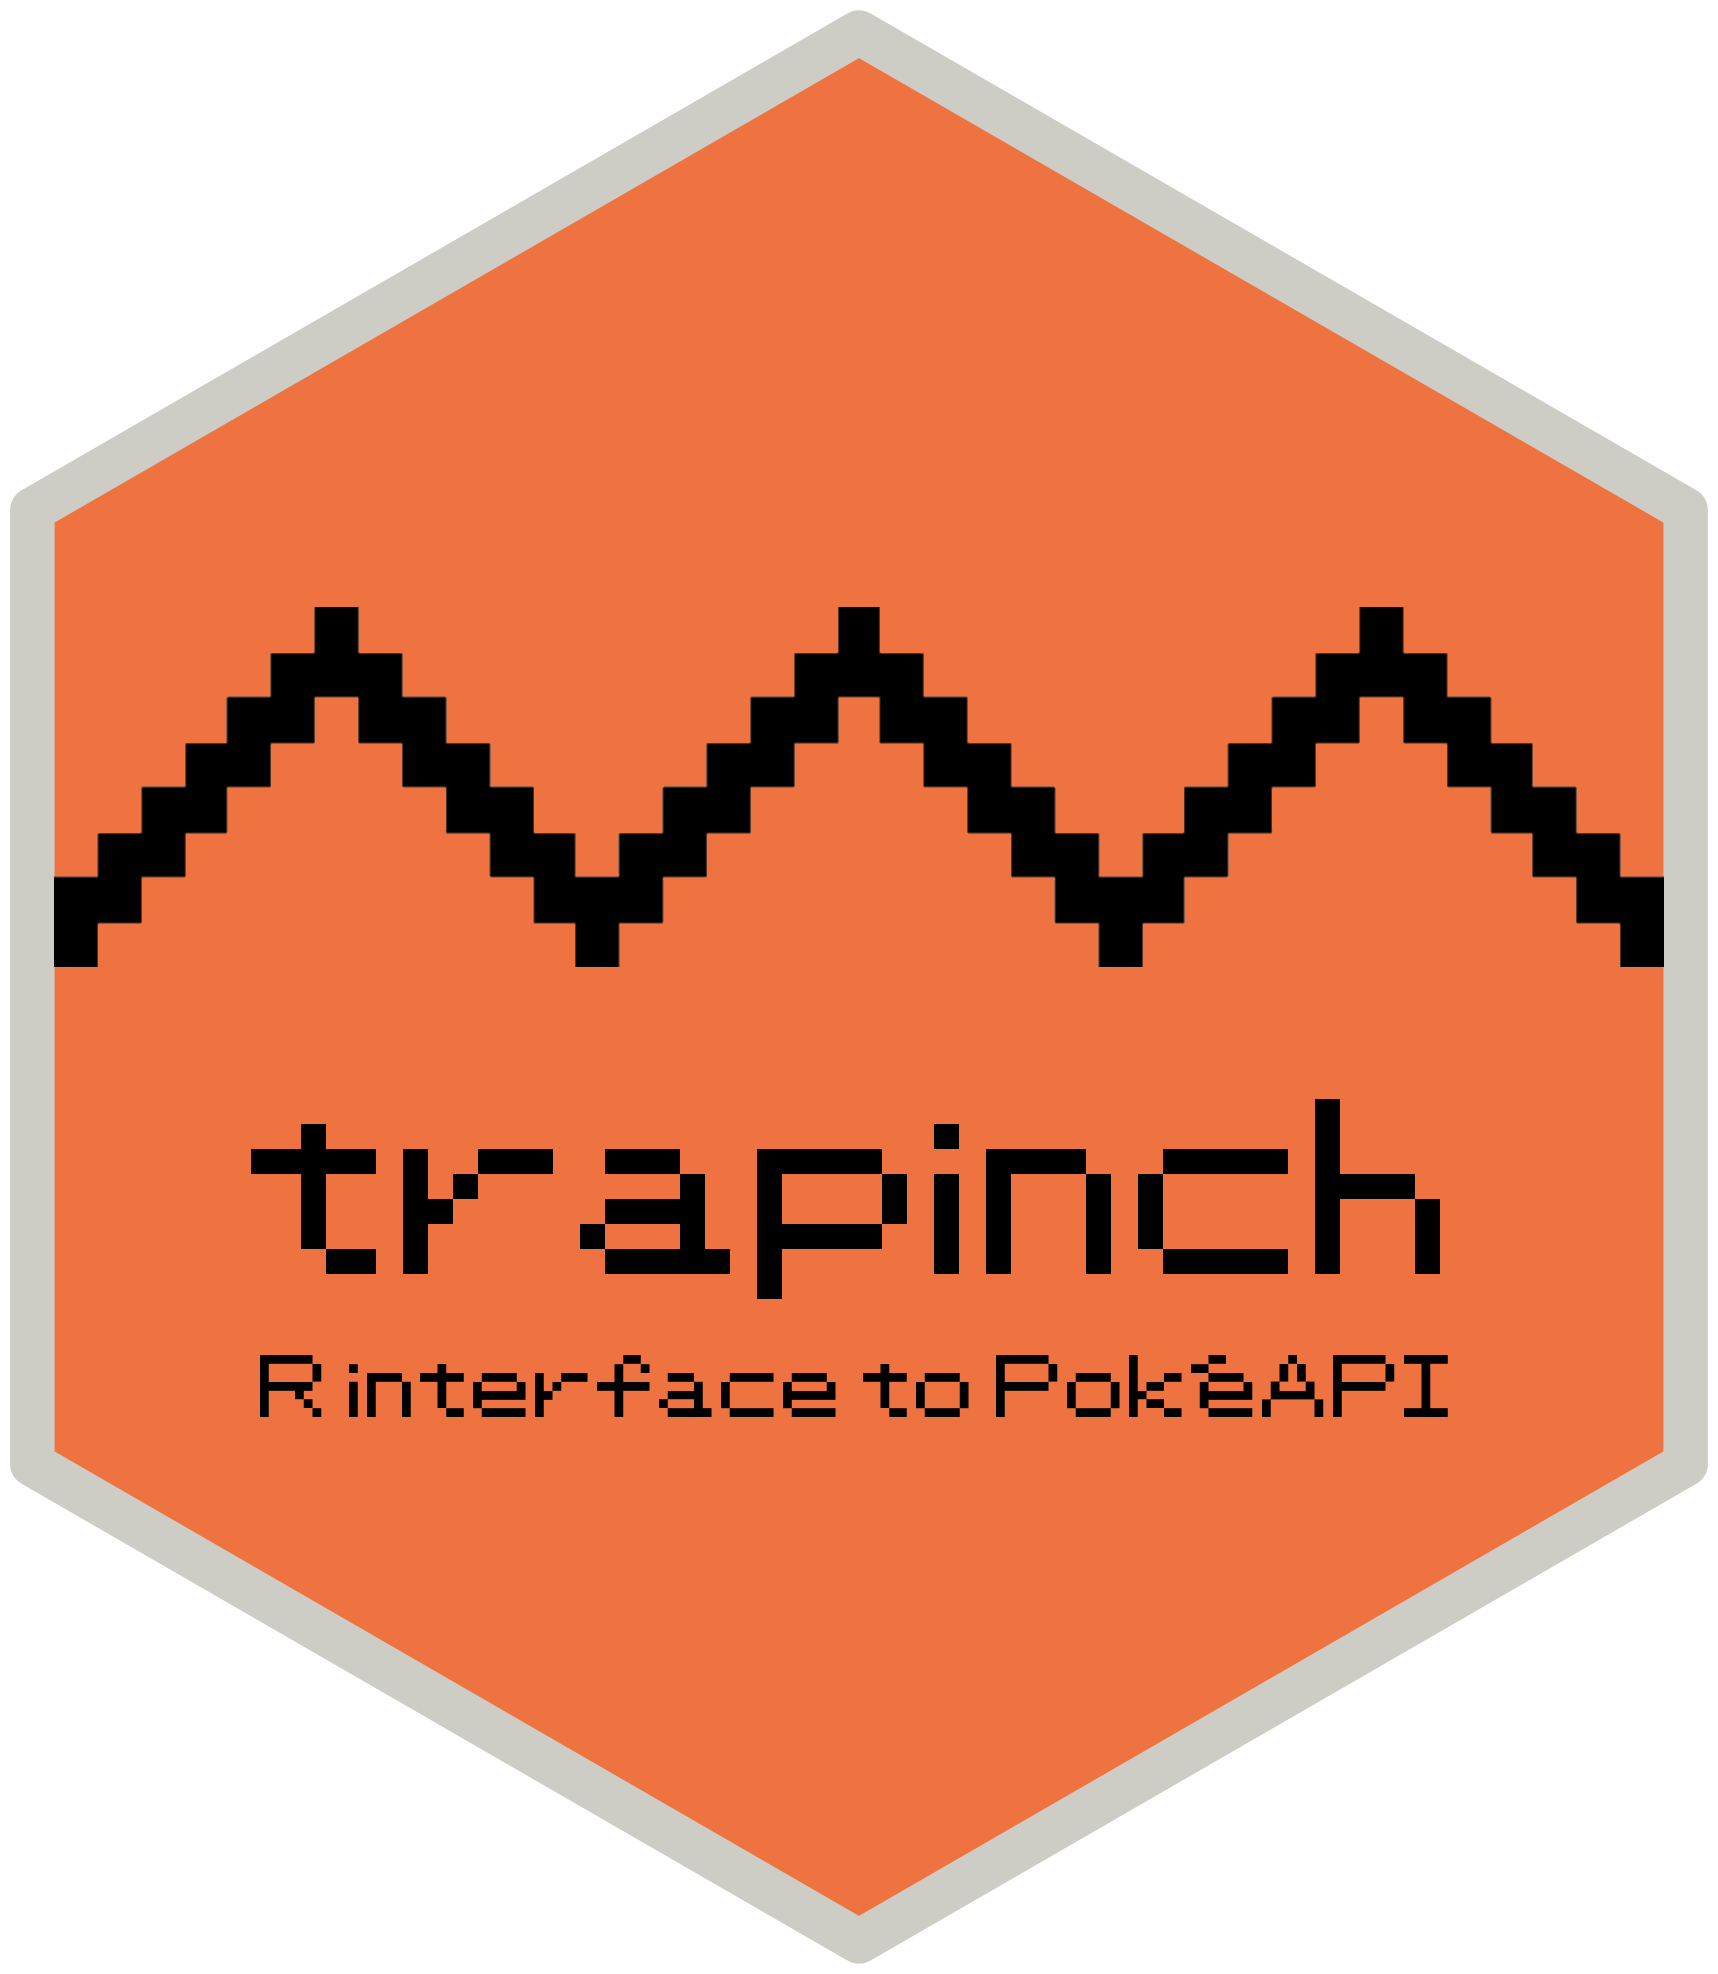 GitHub - PokeAPI/sprites: Repository containing all the Pokémon sprites